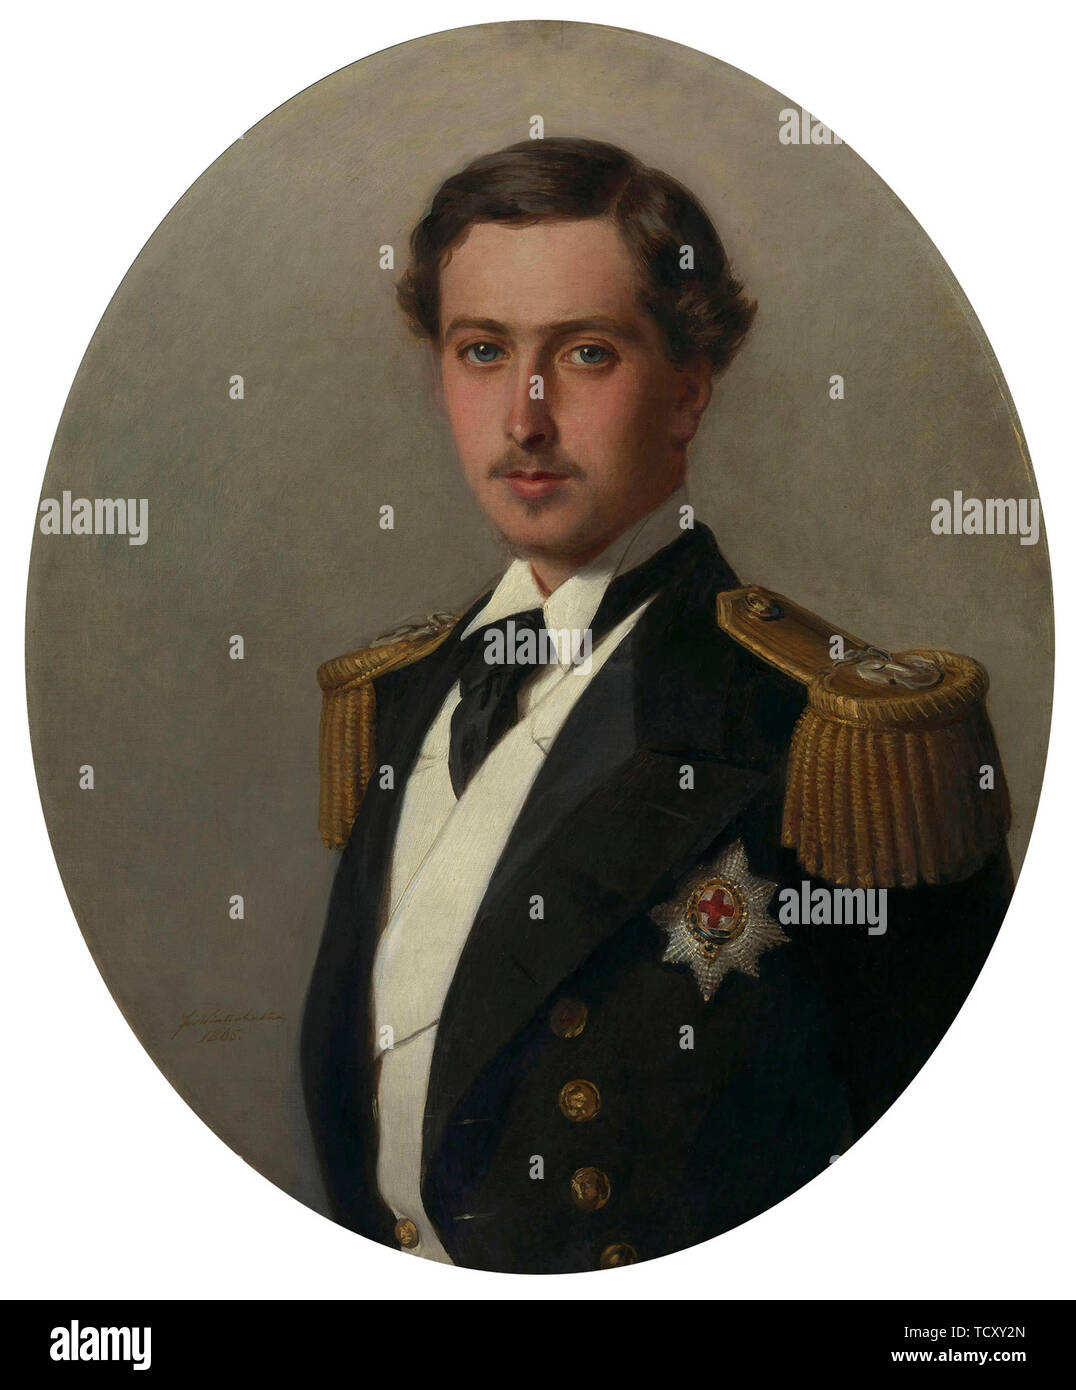 Portrait von Prince Alfred (1844-1900), später Herzog von Edinburgh, 1865. Schöpfer: Winterhalter, Franz Xaver (1805-1873). Stockfoto